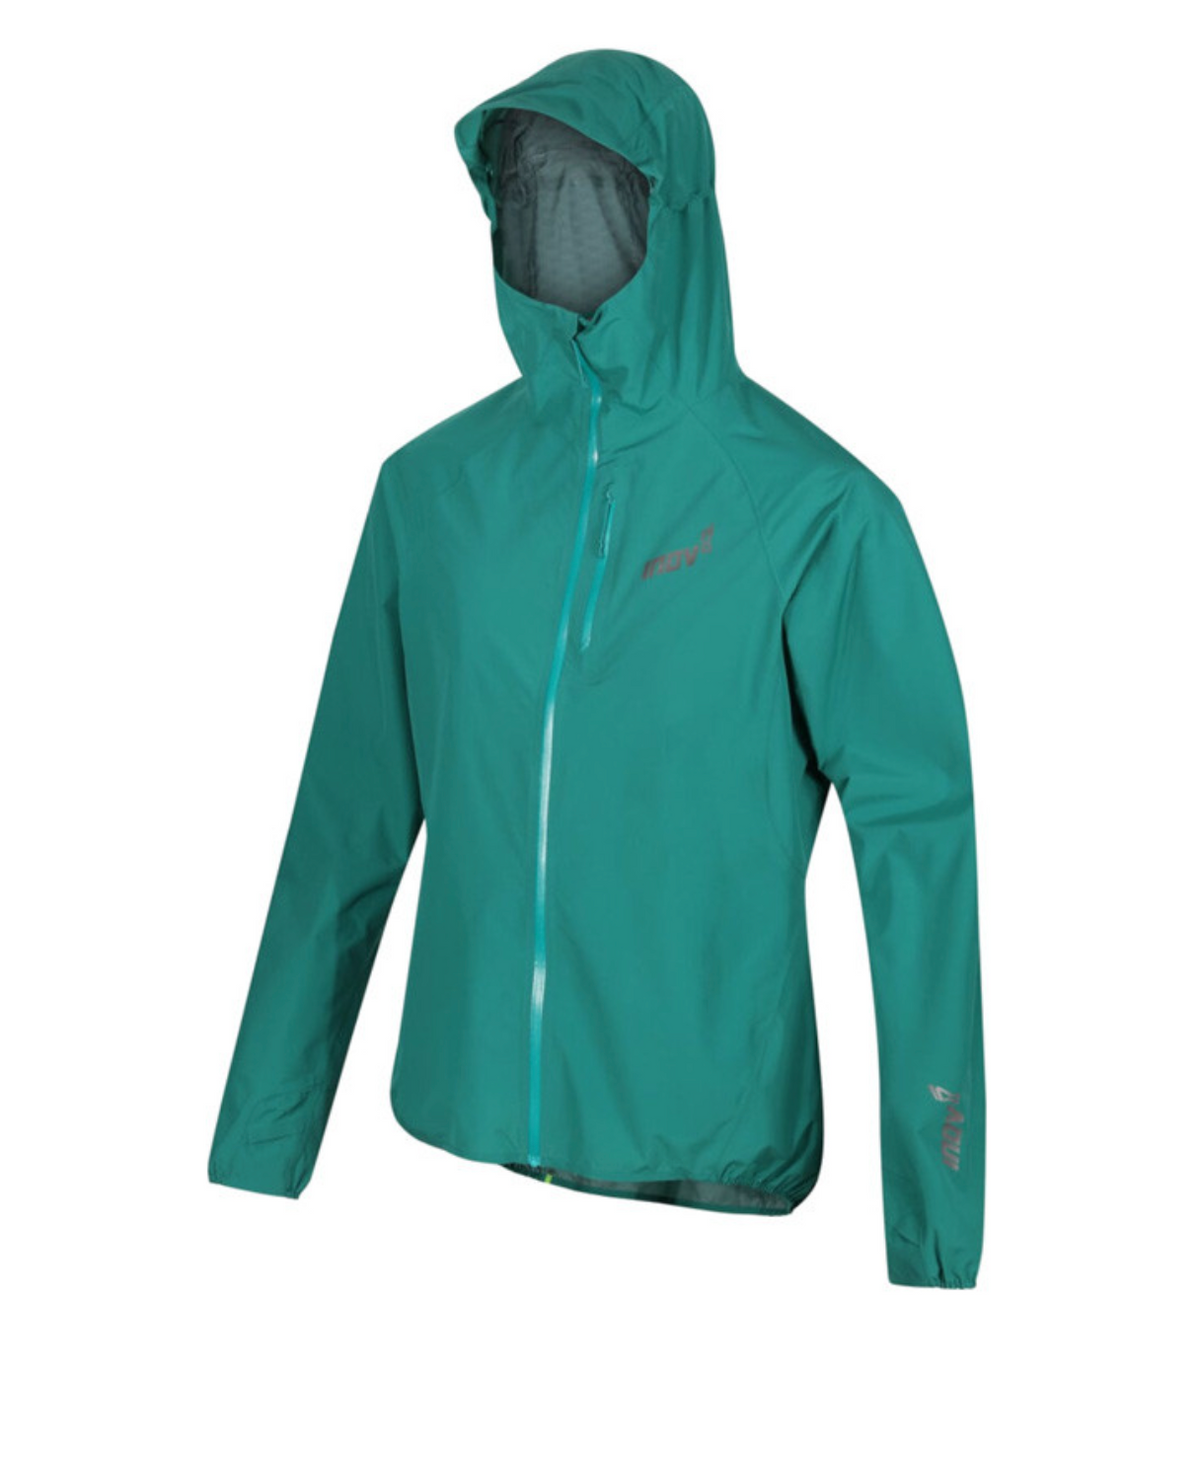 Inov8 Stormshell Waterproof Jacket Mens v2 Green